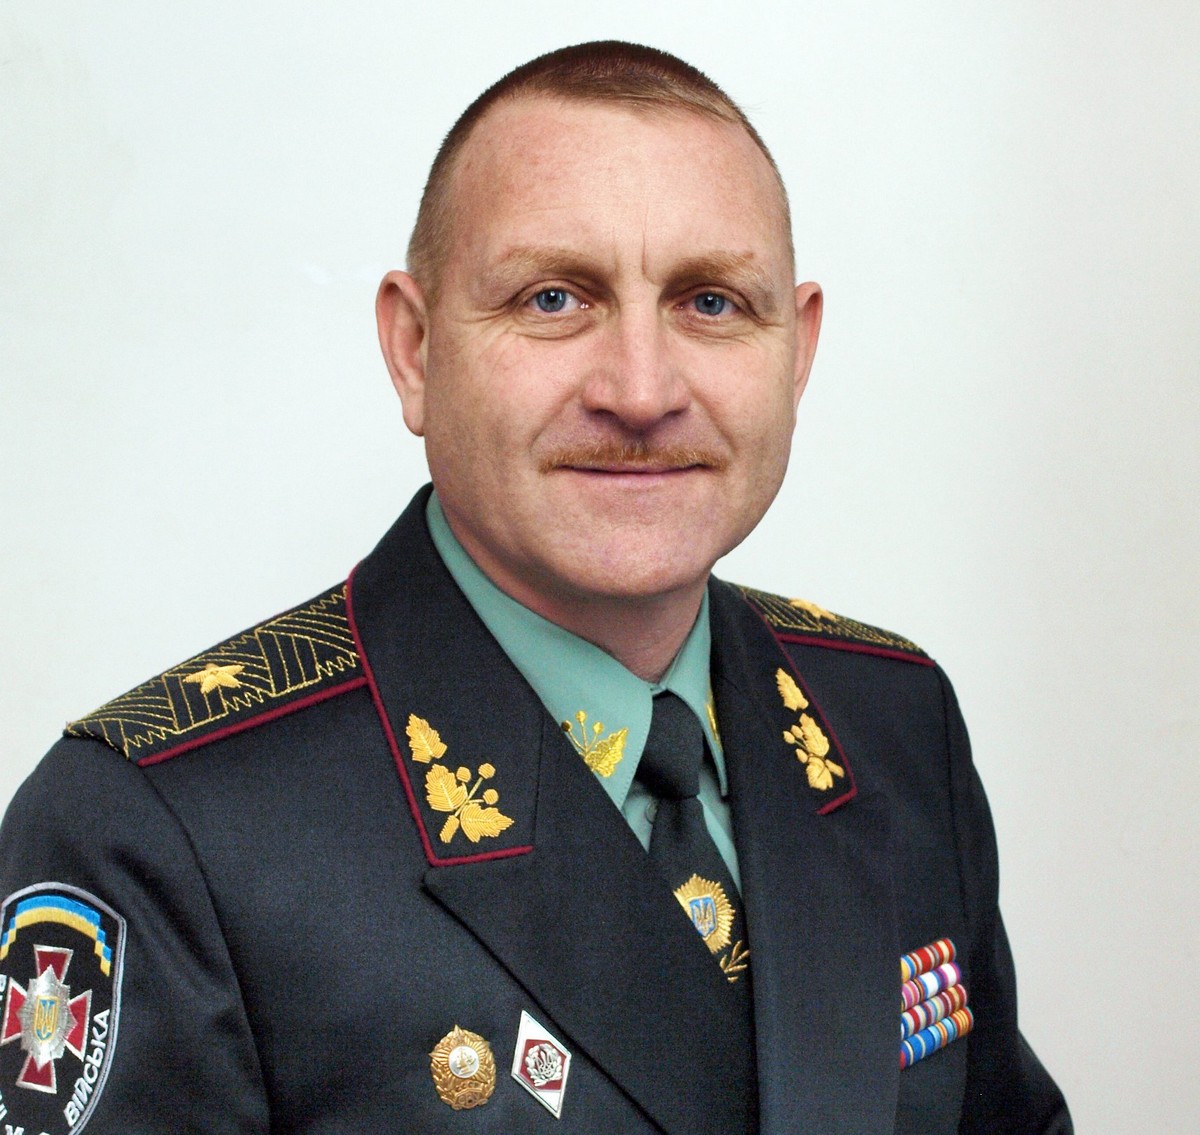 Сергій Кульчицький, український військовий, генерал-майор, учасник війни на сході України, Герой України